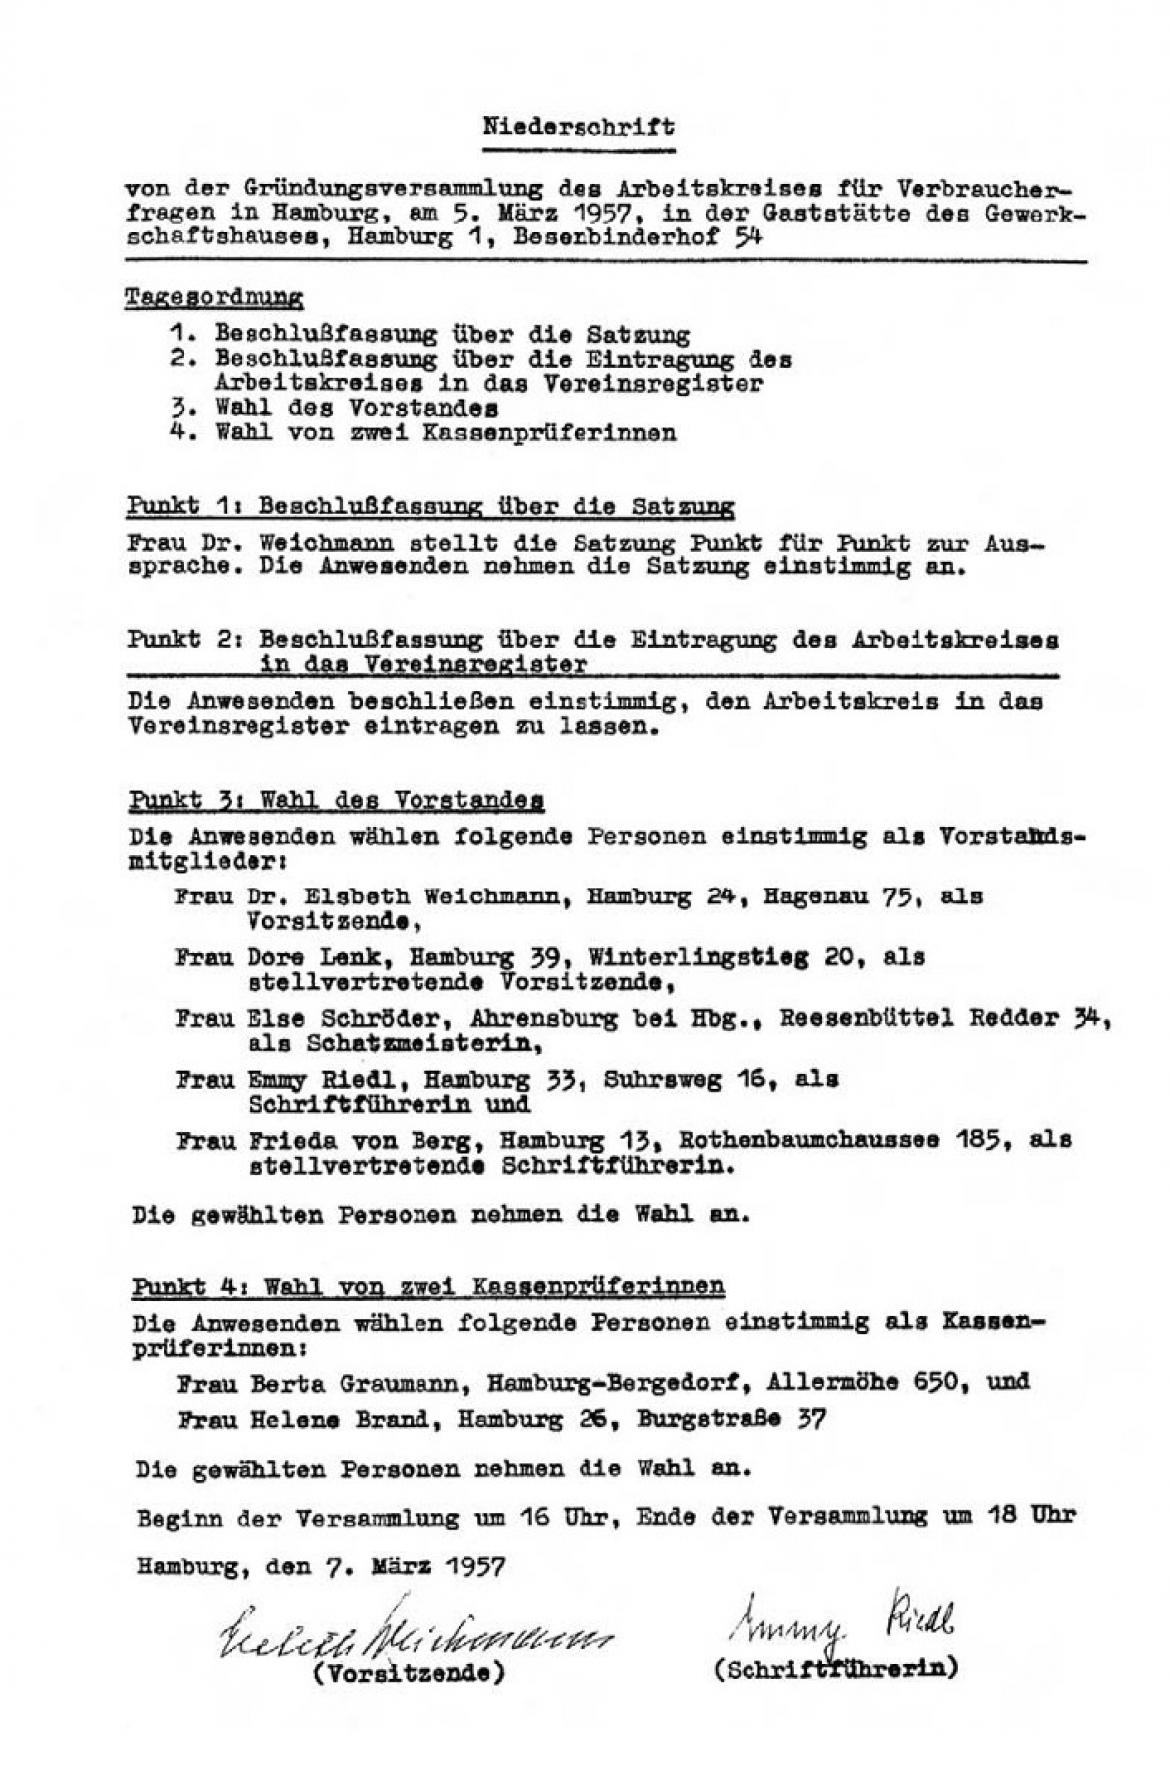 Niederschrift von der Gründungsversammlung (1957)